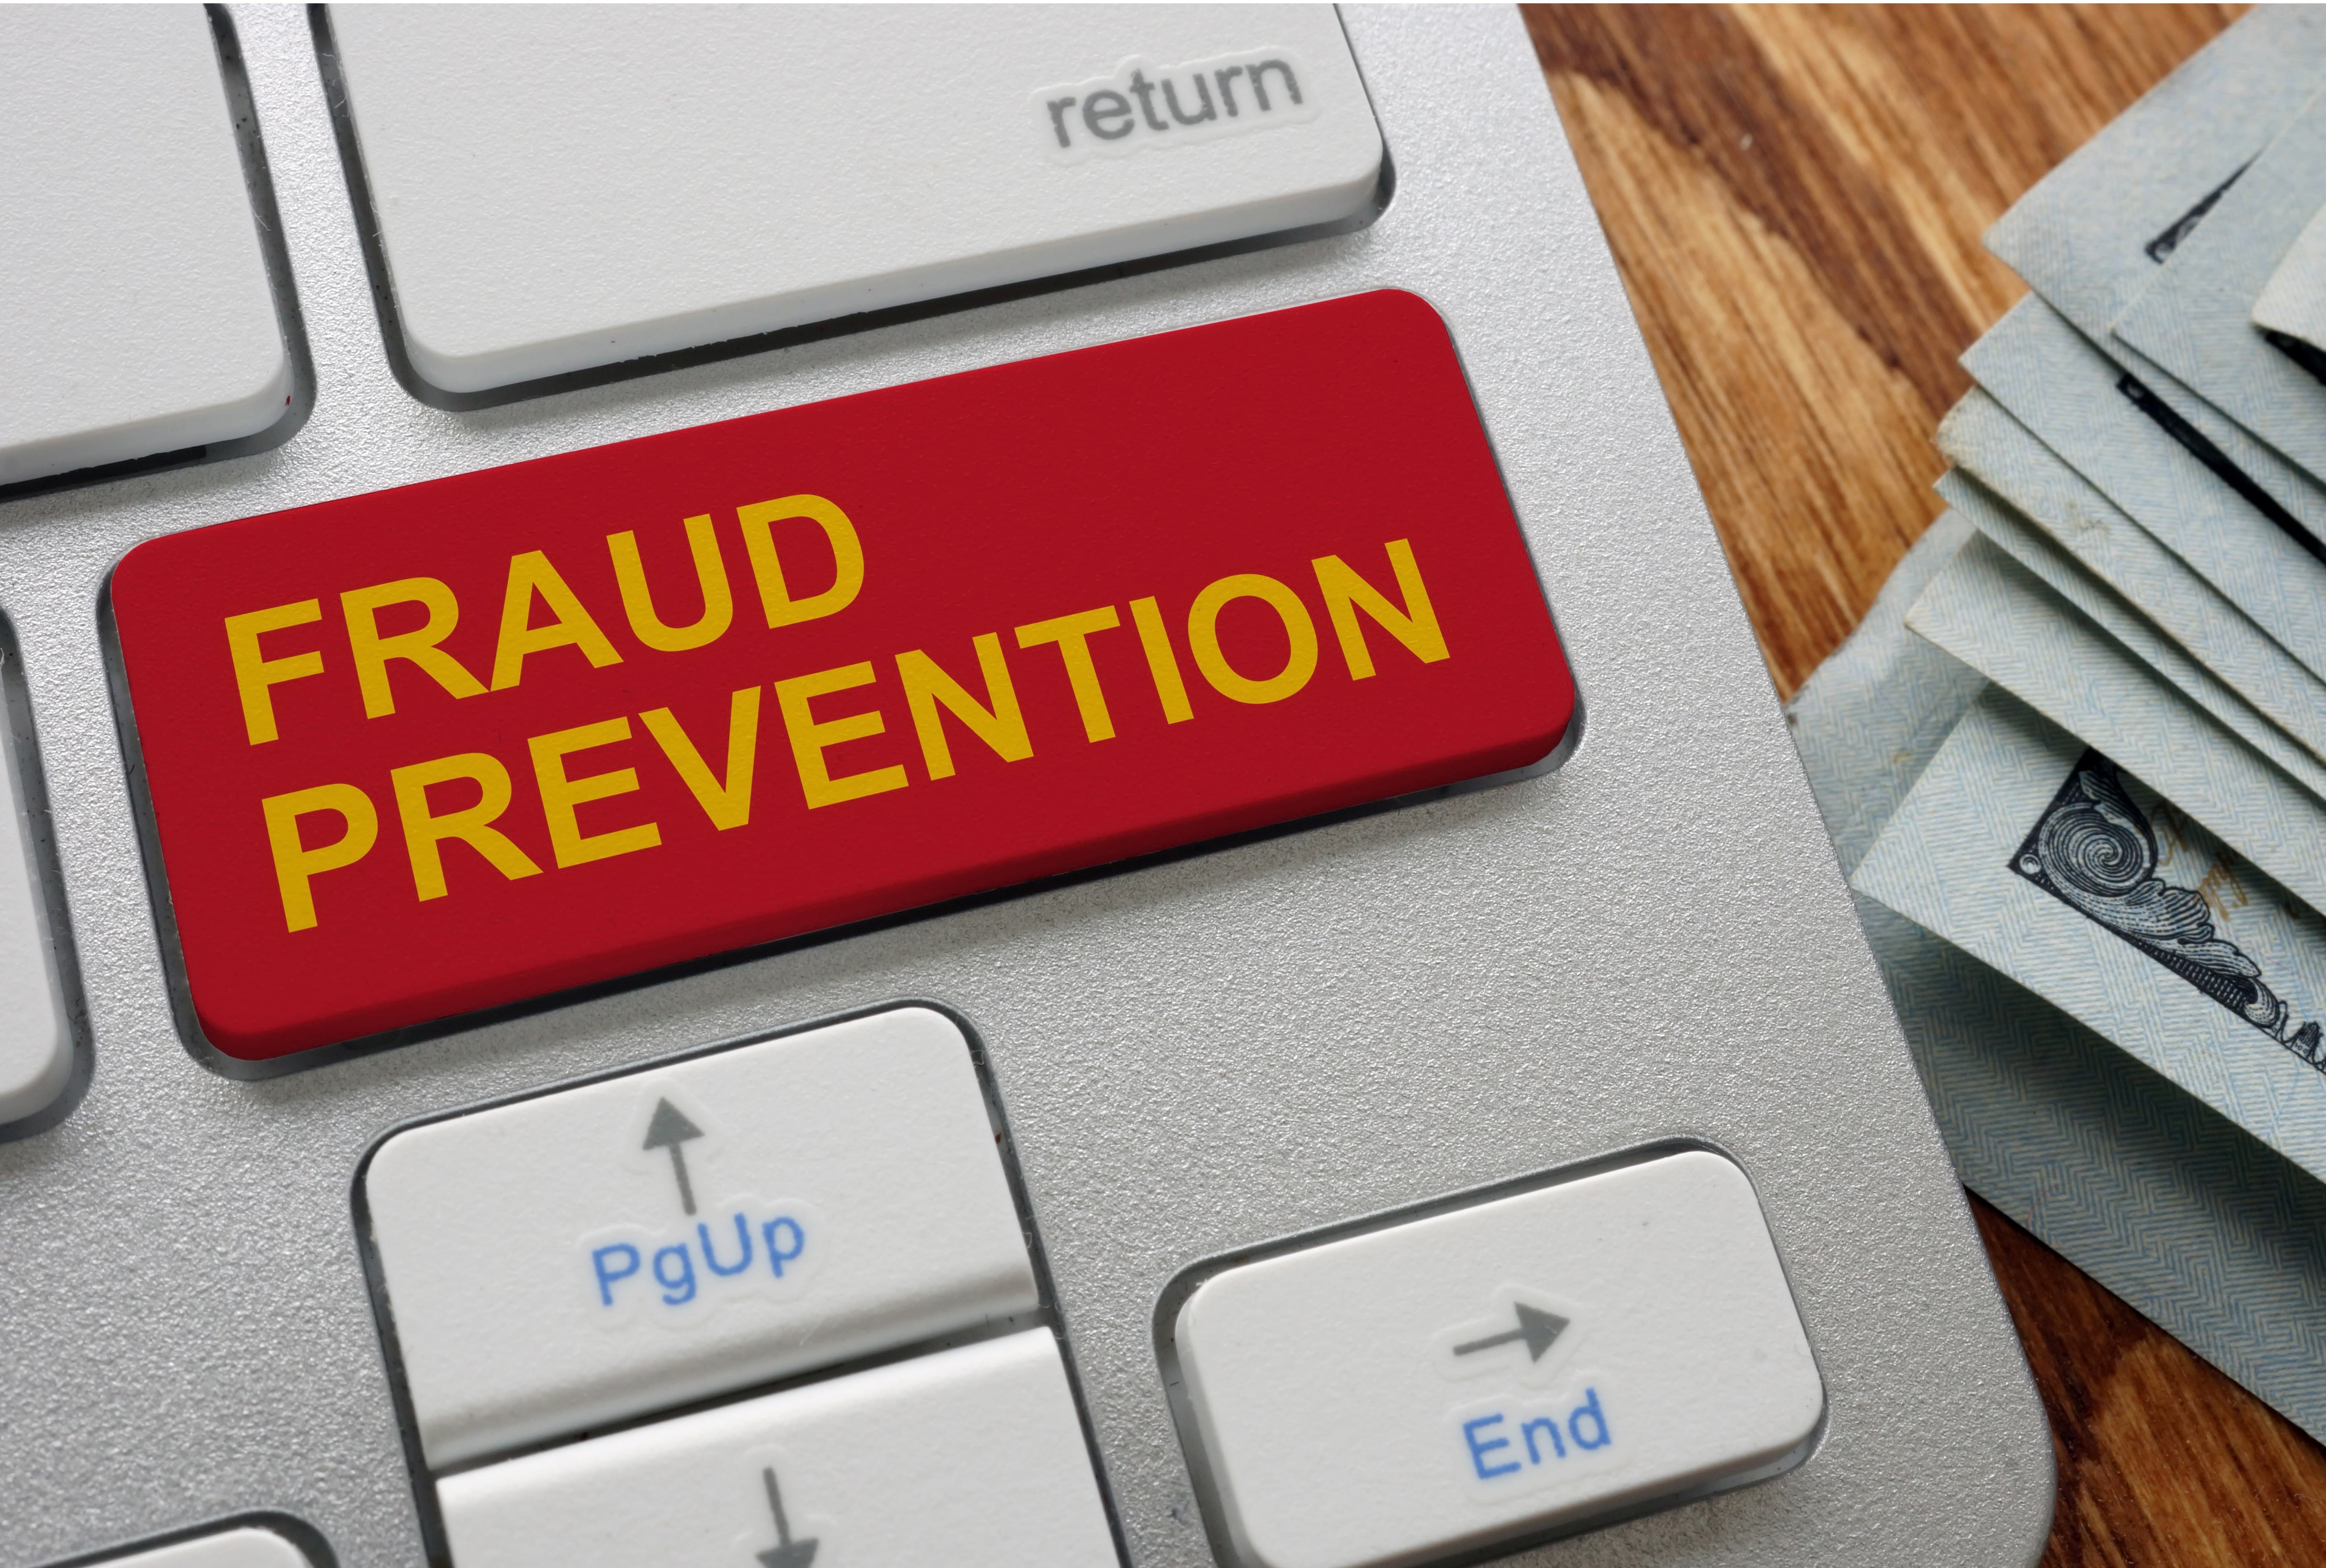 fraud prevention on keyboard key